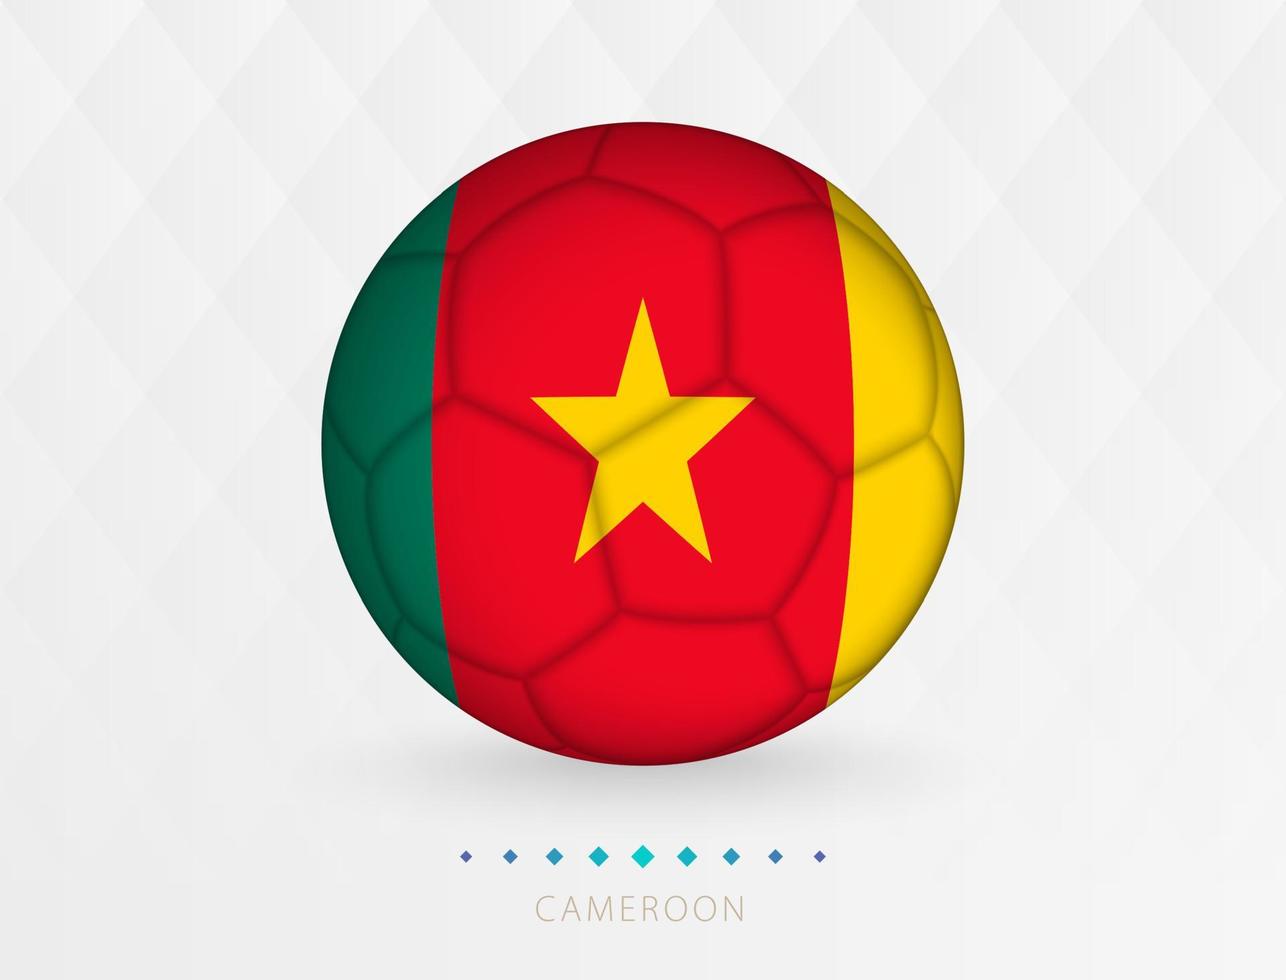 Amerikaans voetbal bal met Kameroen vlag patroon, voetbal bal met vlag van Kameroen nationaal team. vector